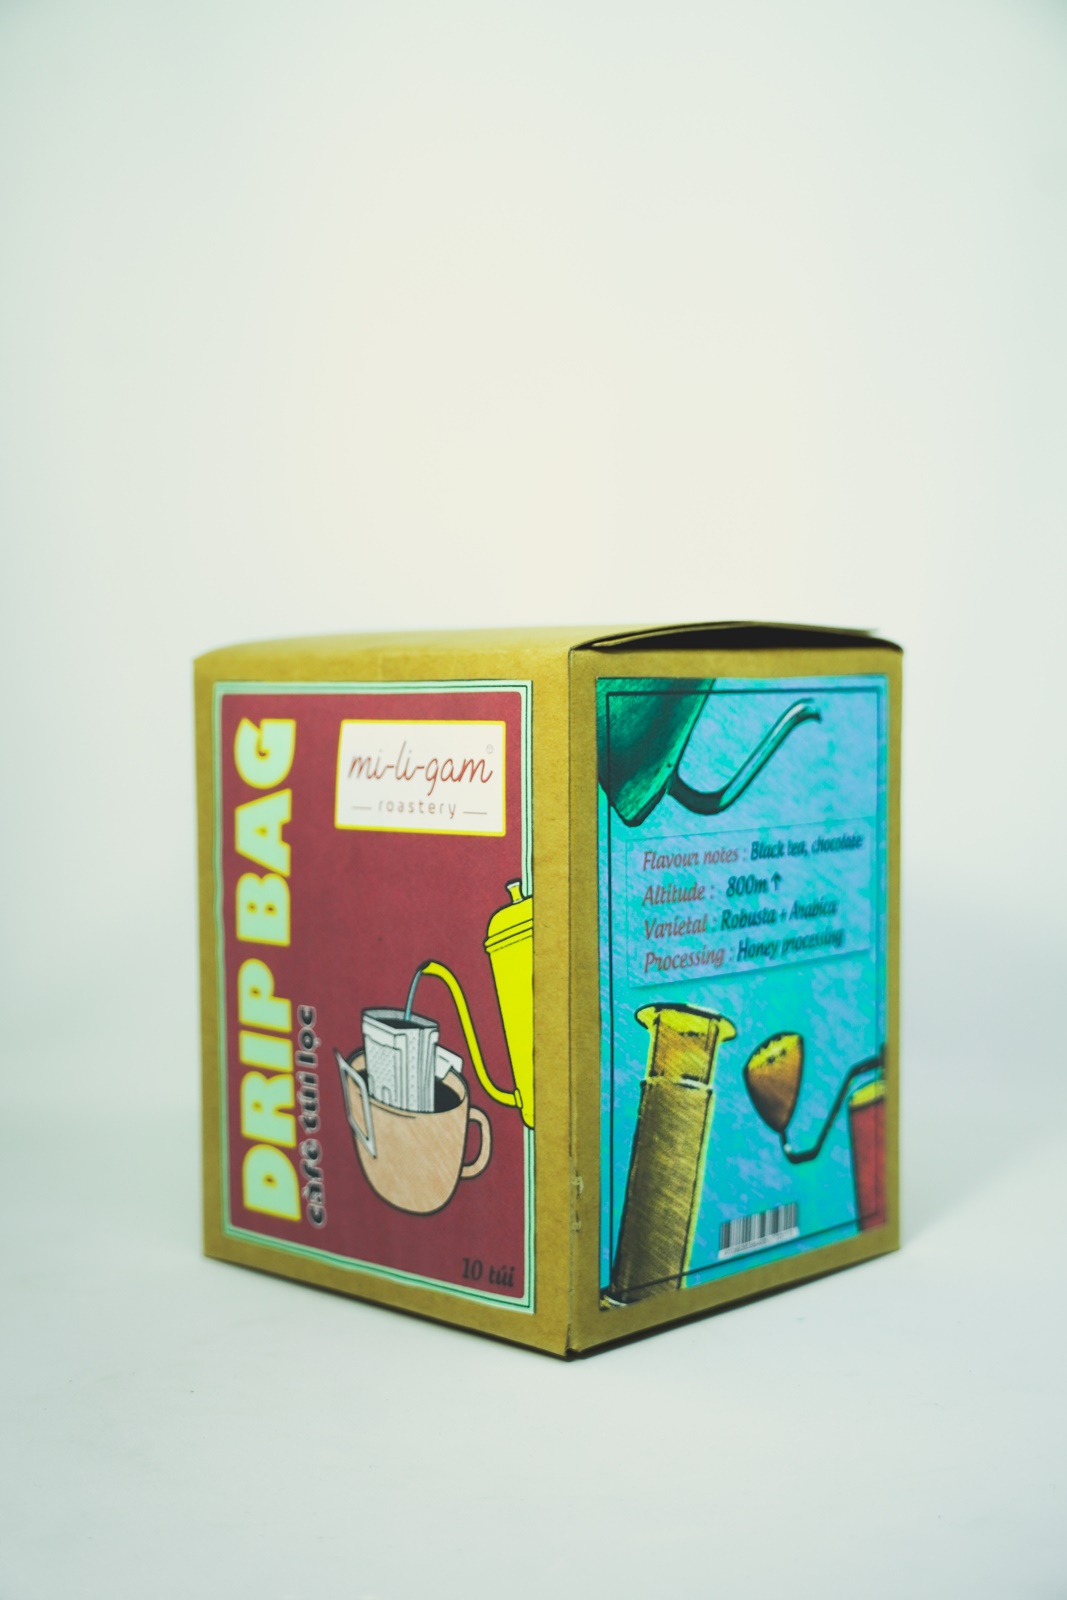 Cà Phê Robusta - Hộp 10 Túi Lọc x 20g | mi-li-gam roastery #miligam cà phê nguyên bản rang xay túi lọc pha phin giấy